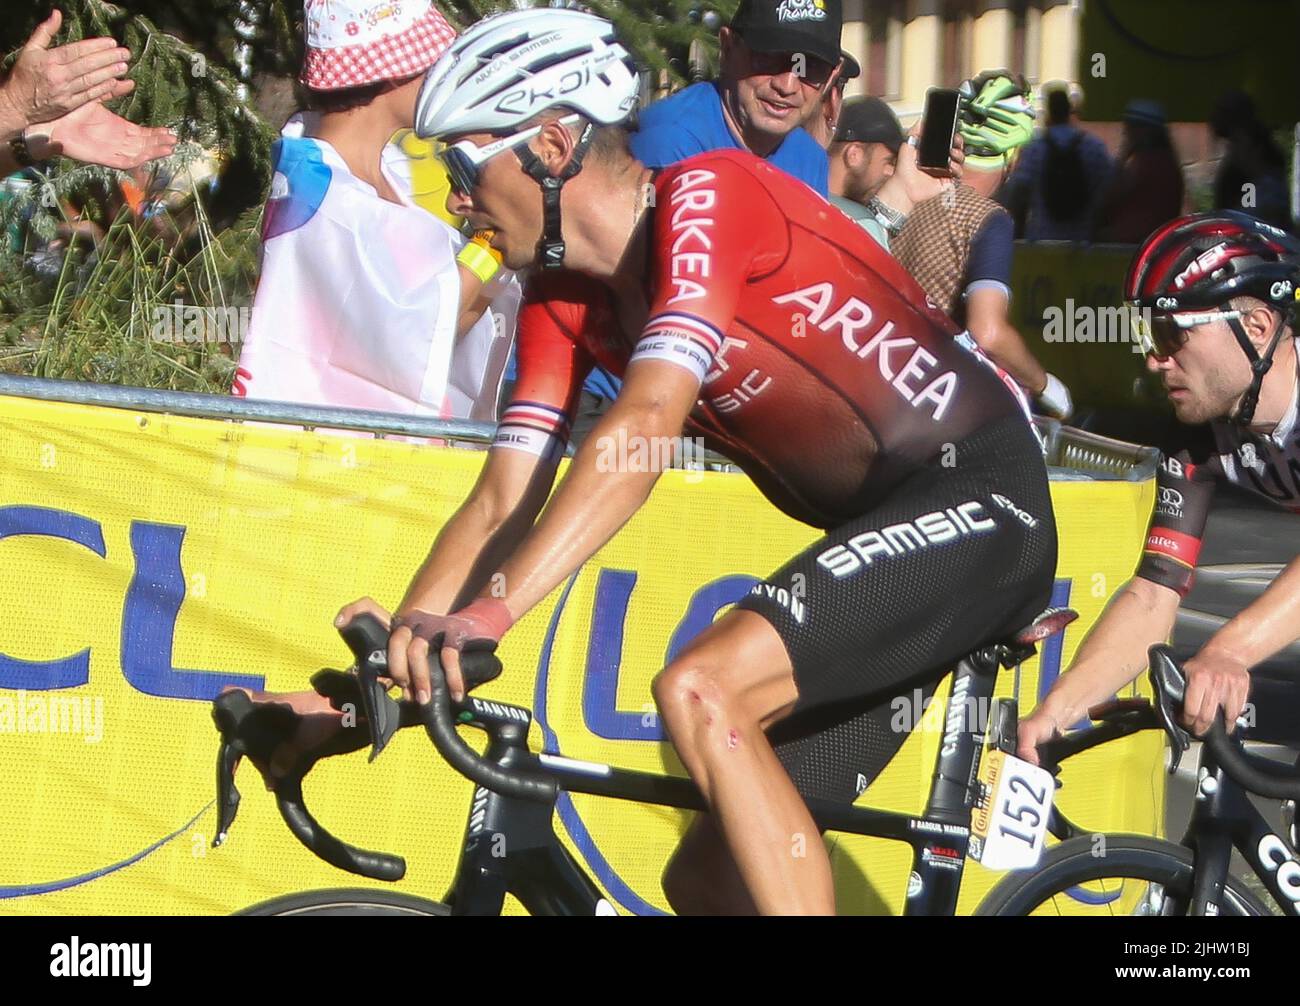 Barguil Warren del Team Arka Samsic durante il Tour France 2022, gara ciclistica tappa 12, Brianon - Alpe d'Huez (165,5 km) il 14 luglio 2022 a Huez, Francia - Foto Laurent Lairys / DPPI Foto Stock